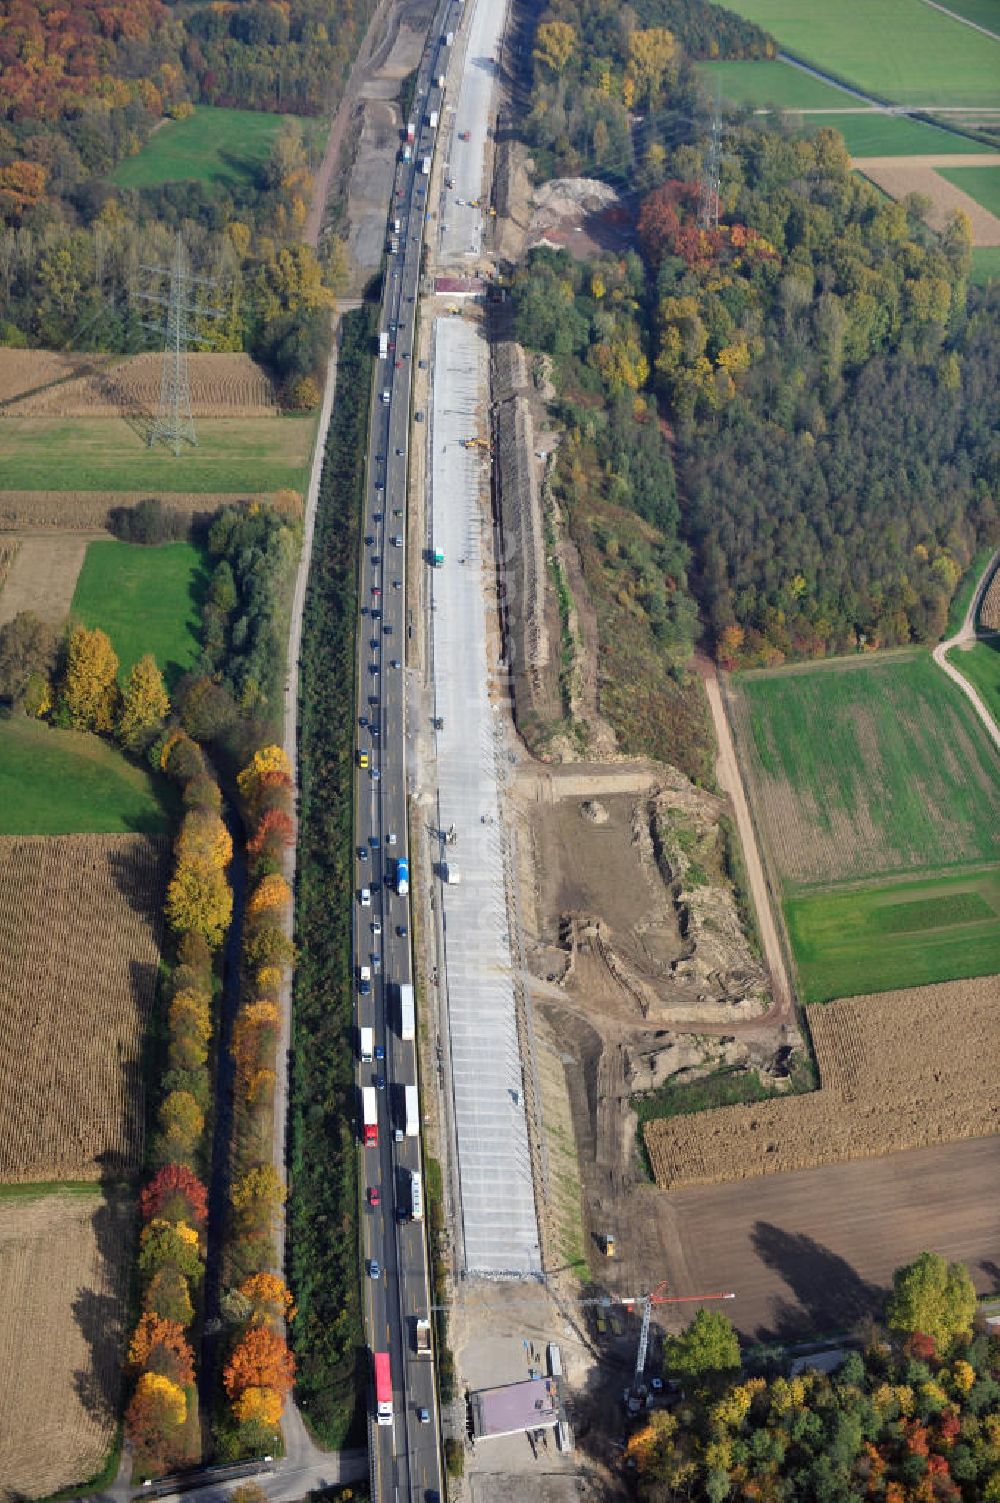 Bühl-Balzhofen von oben - Baustelle Ausbau Autobahn A 5